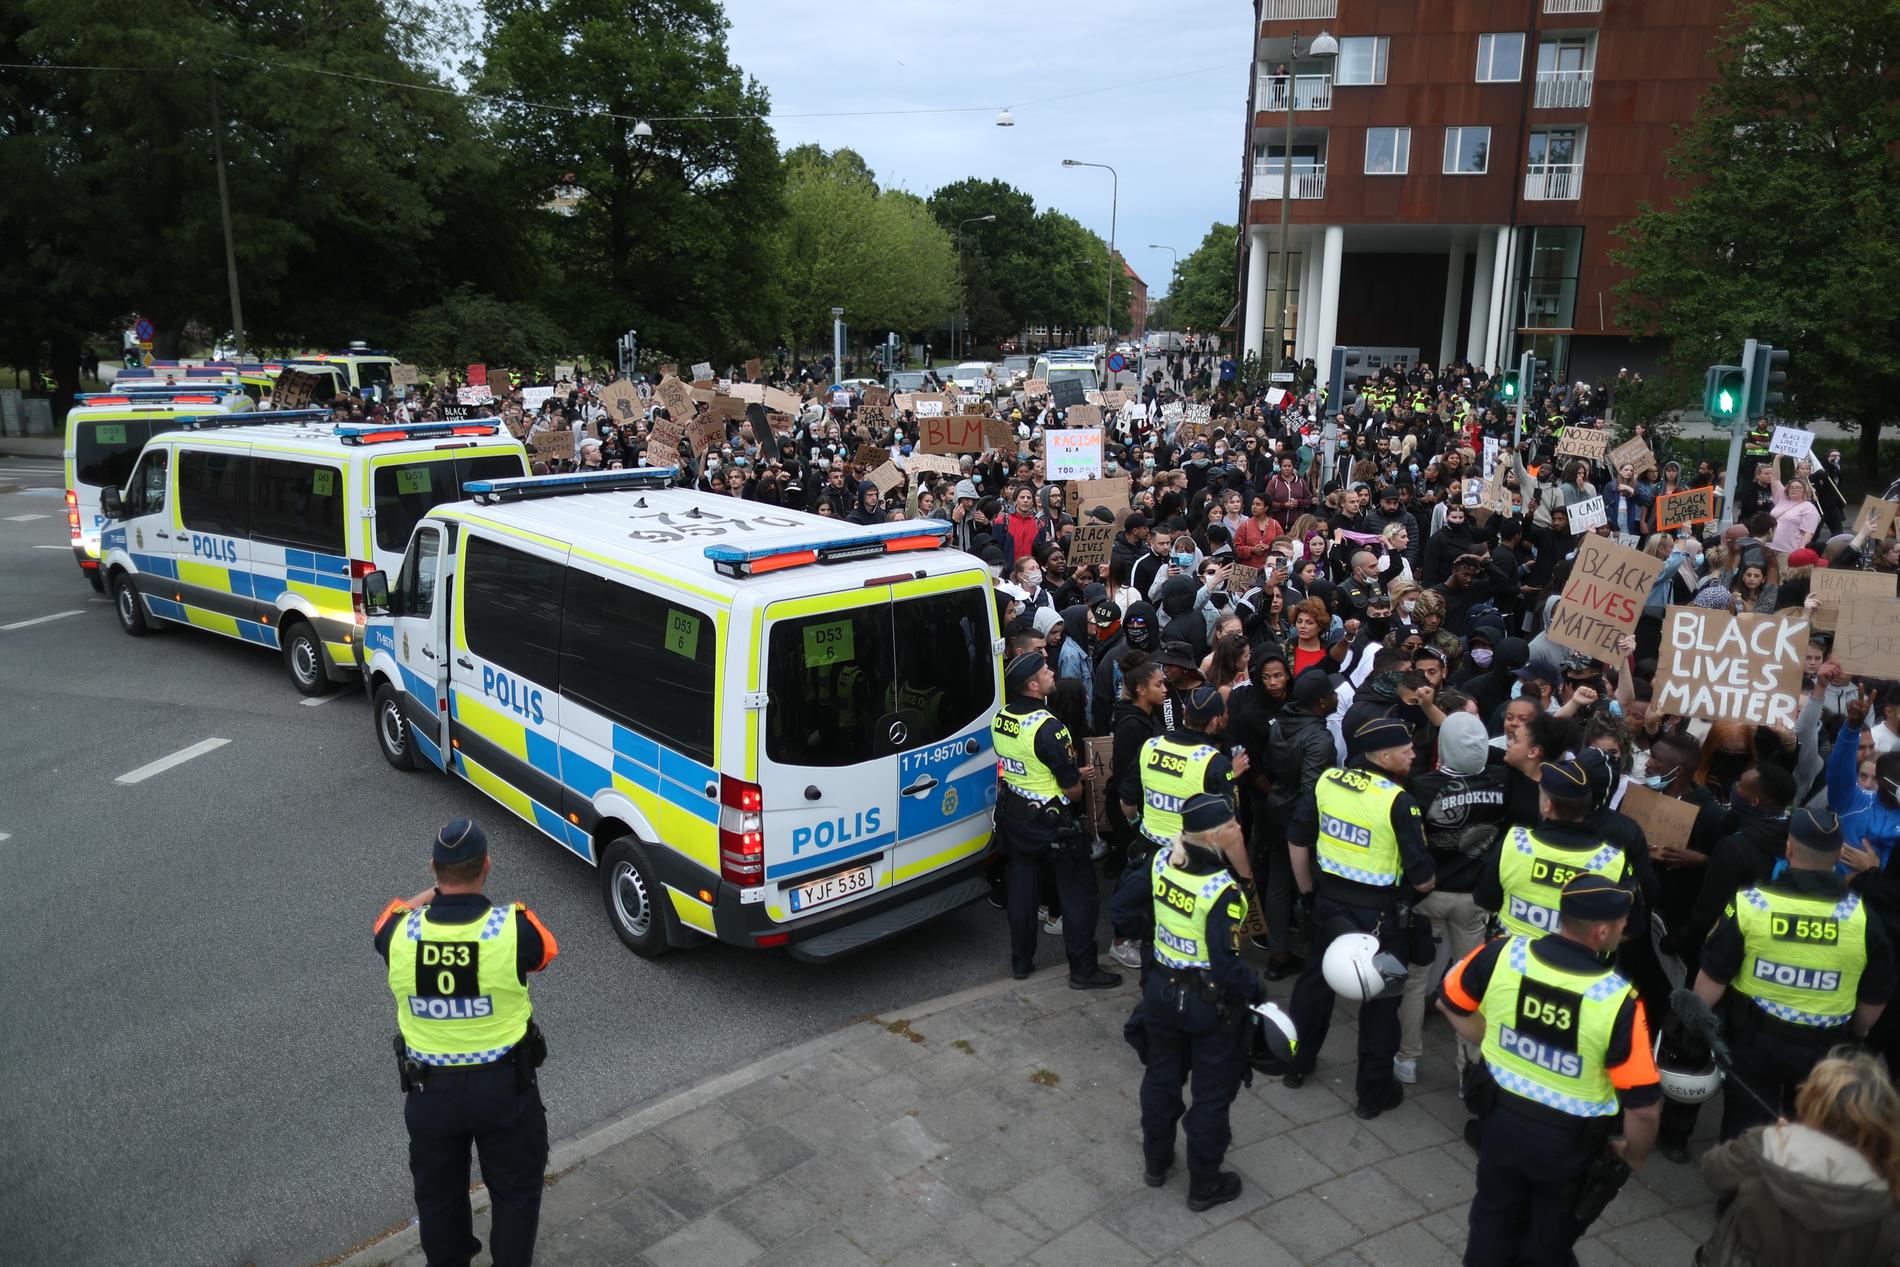 Förra veckans demonstration i Malmö avlöpte lugnt utan att polisen ingrep. Arkivbild.